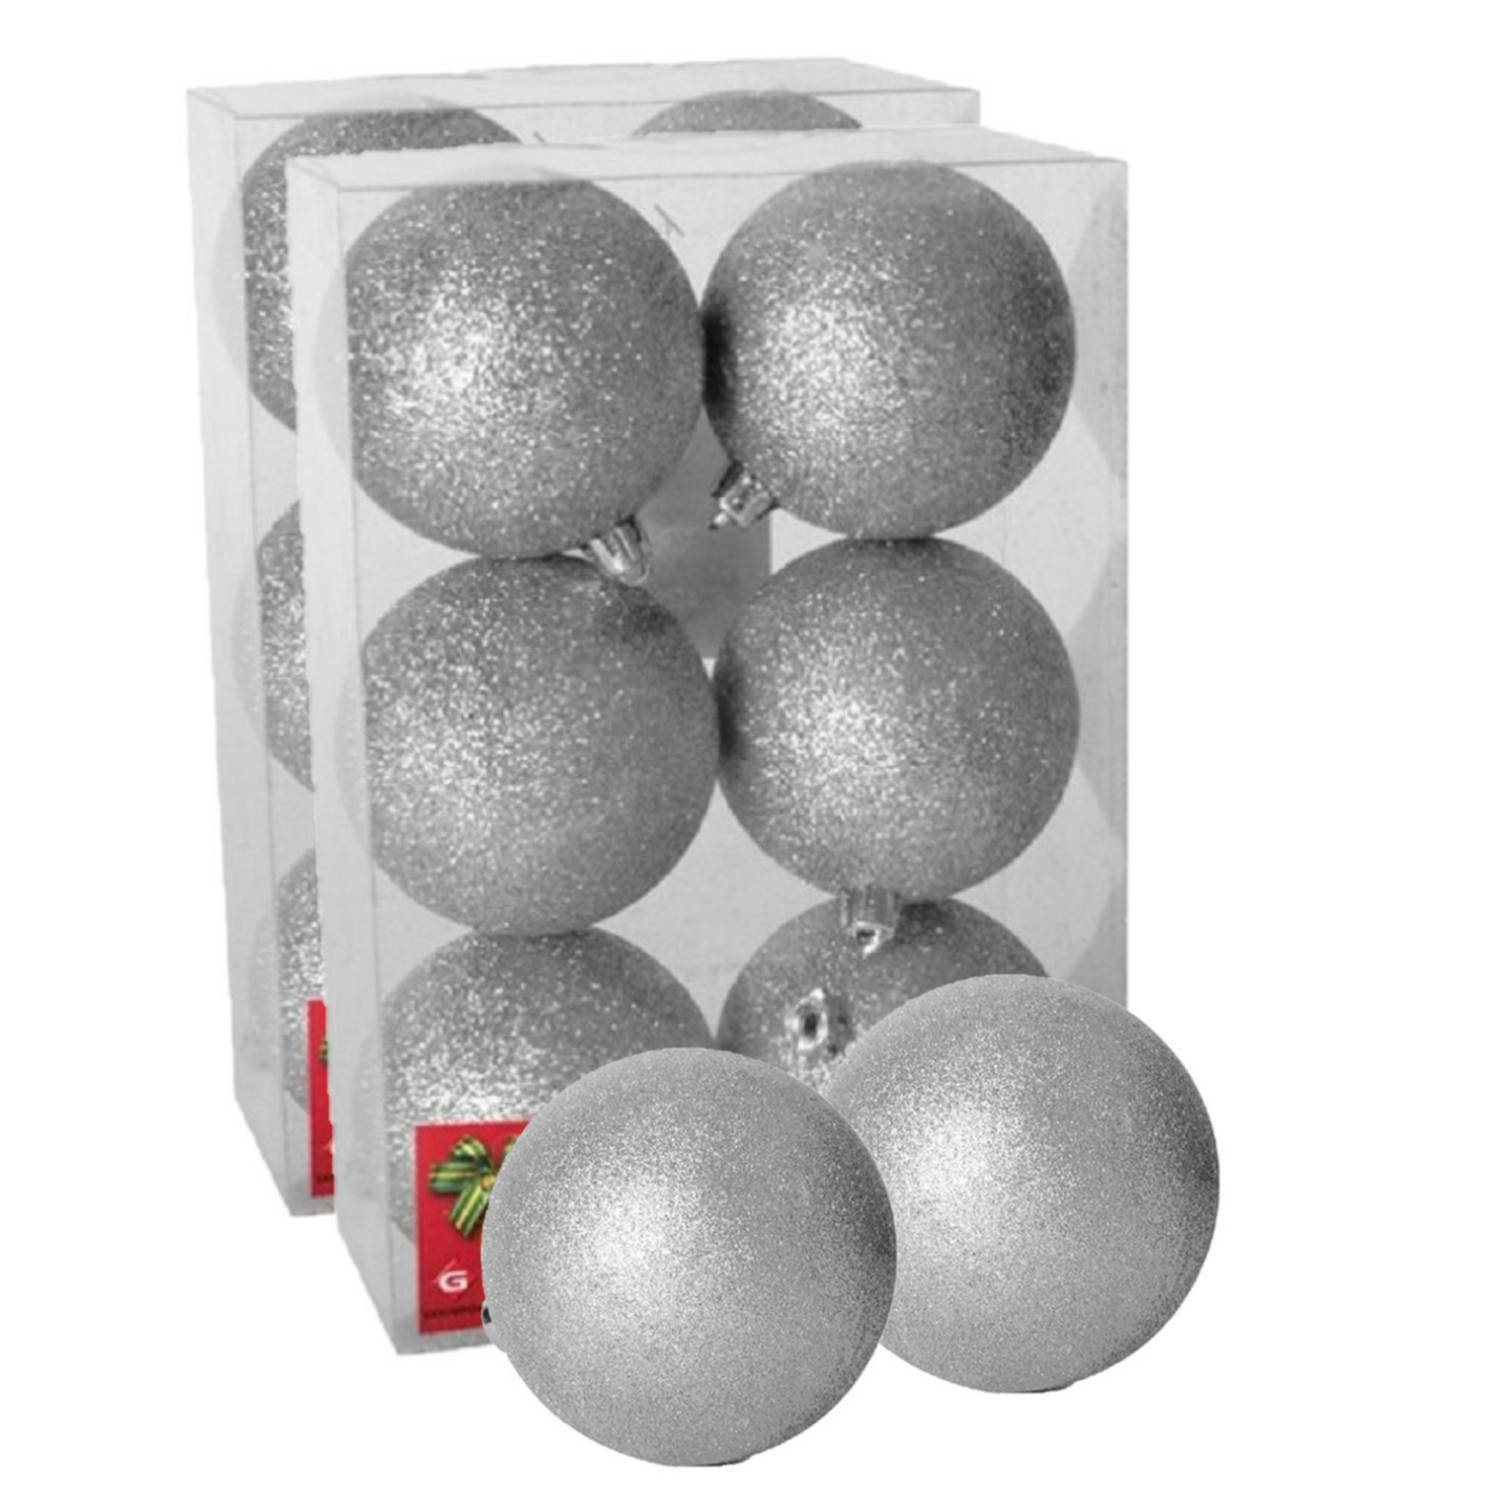 12x stuks kerstballen zilver glitters kunststof 8 cm Kerstbal